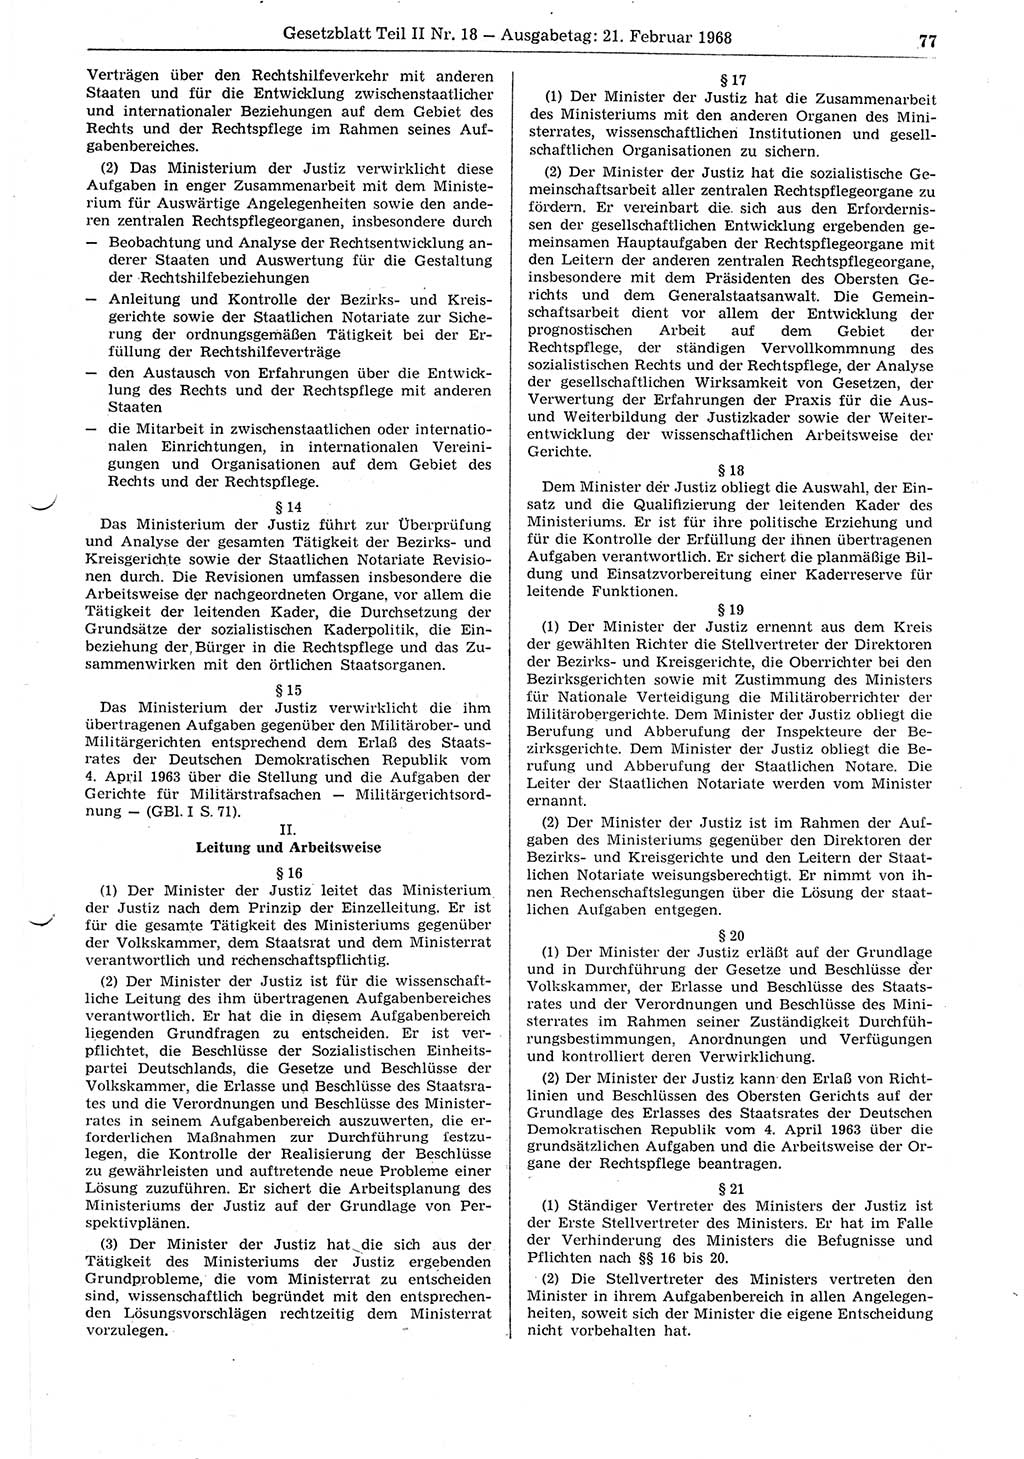 Gesetzblatt (GBl.) der Deutschen Demokratischen Republik (DDR) Teil ⅠⅠ 1968, Seite 77 (GBl. DDR ⅠⅠ 1968, S. 77)